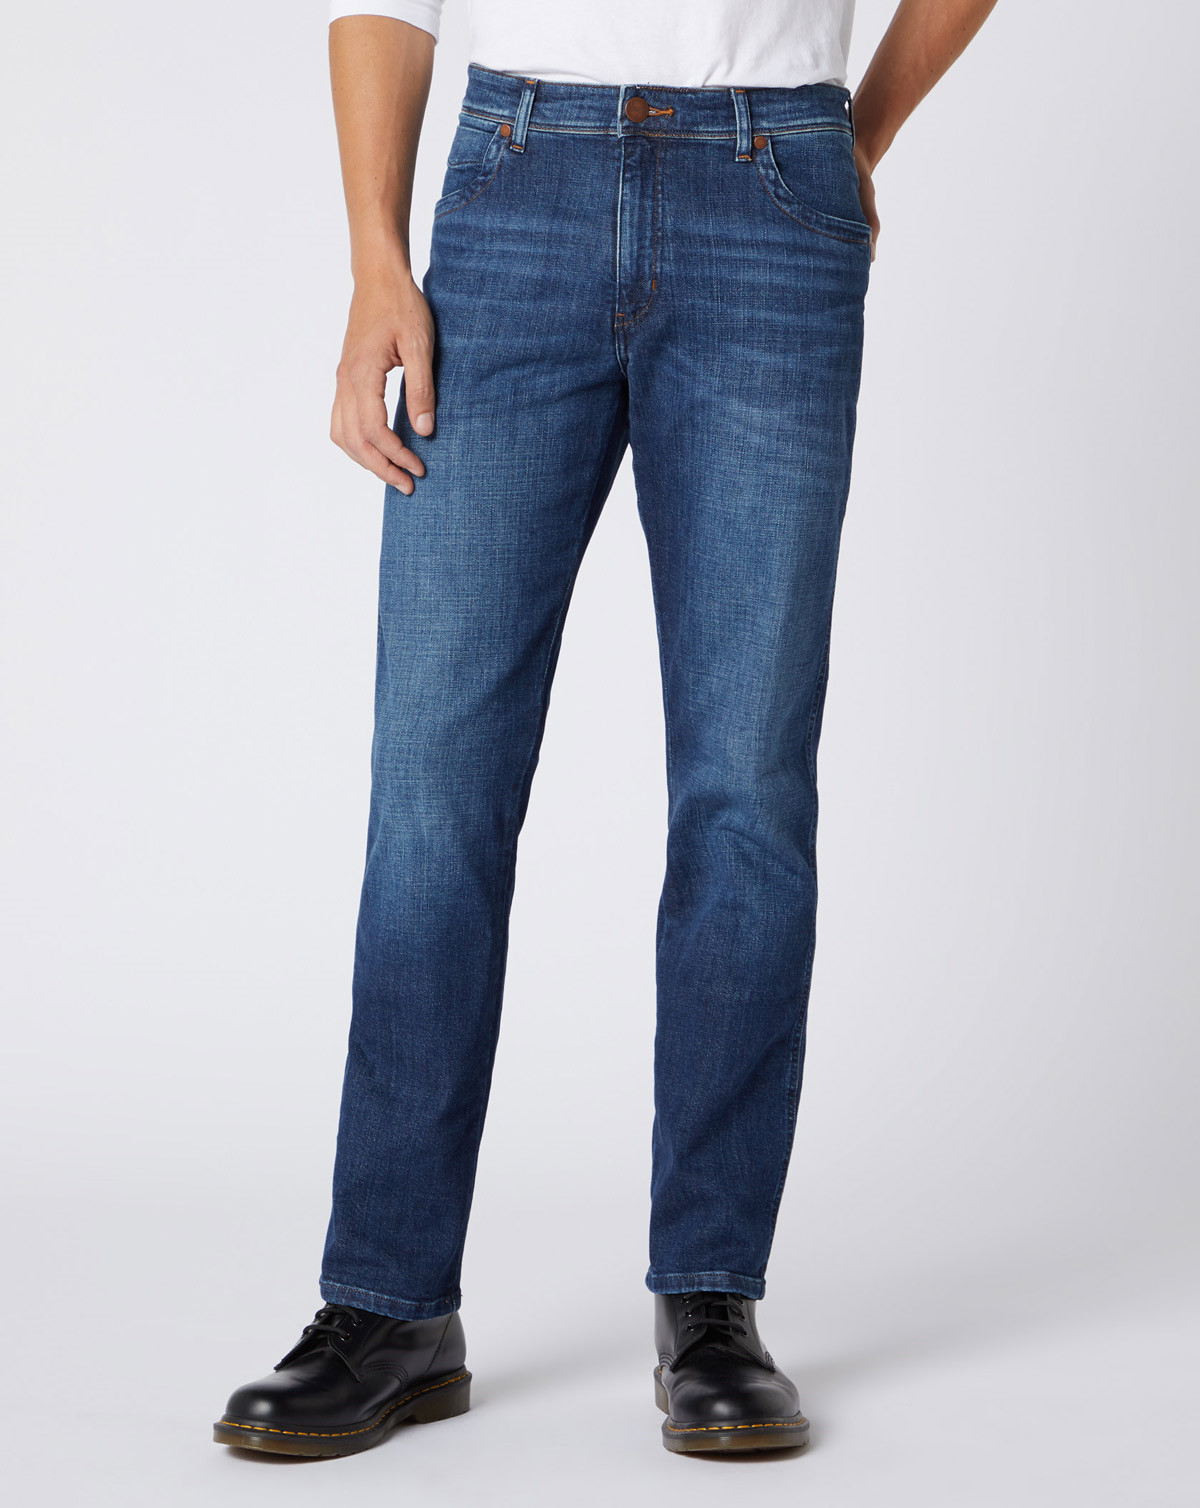 wrangler texas regular jeans